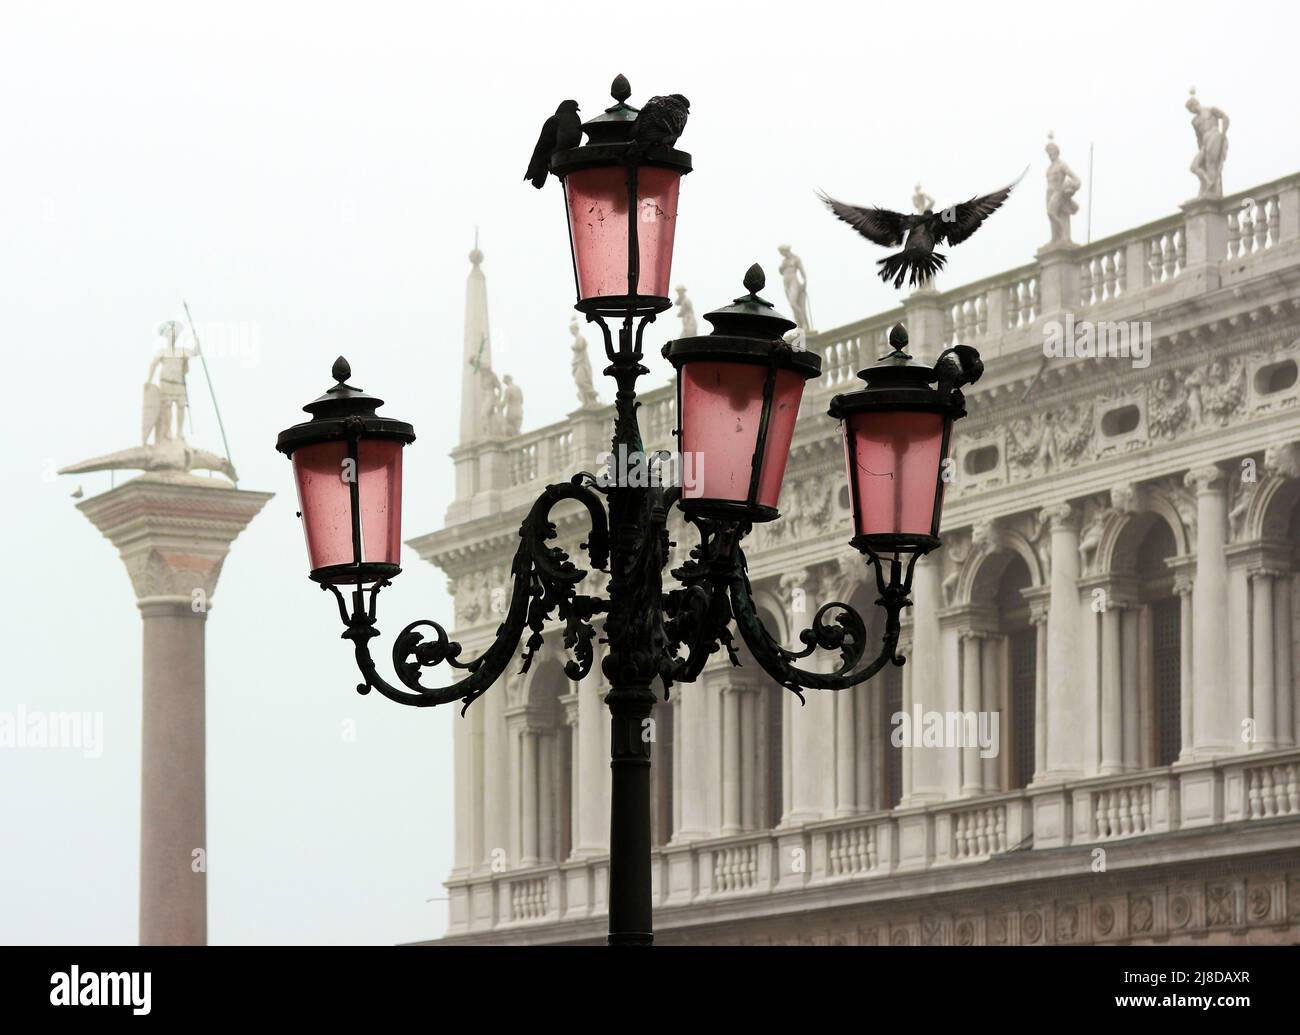 Vue romantique d'un lampadaire vénitien typique avec colombes. En arrière-plan, la Bibliothèque Marciana et la colonne de San Teodoro enveloppés de brume Banque D'Images